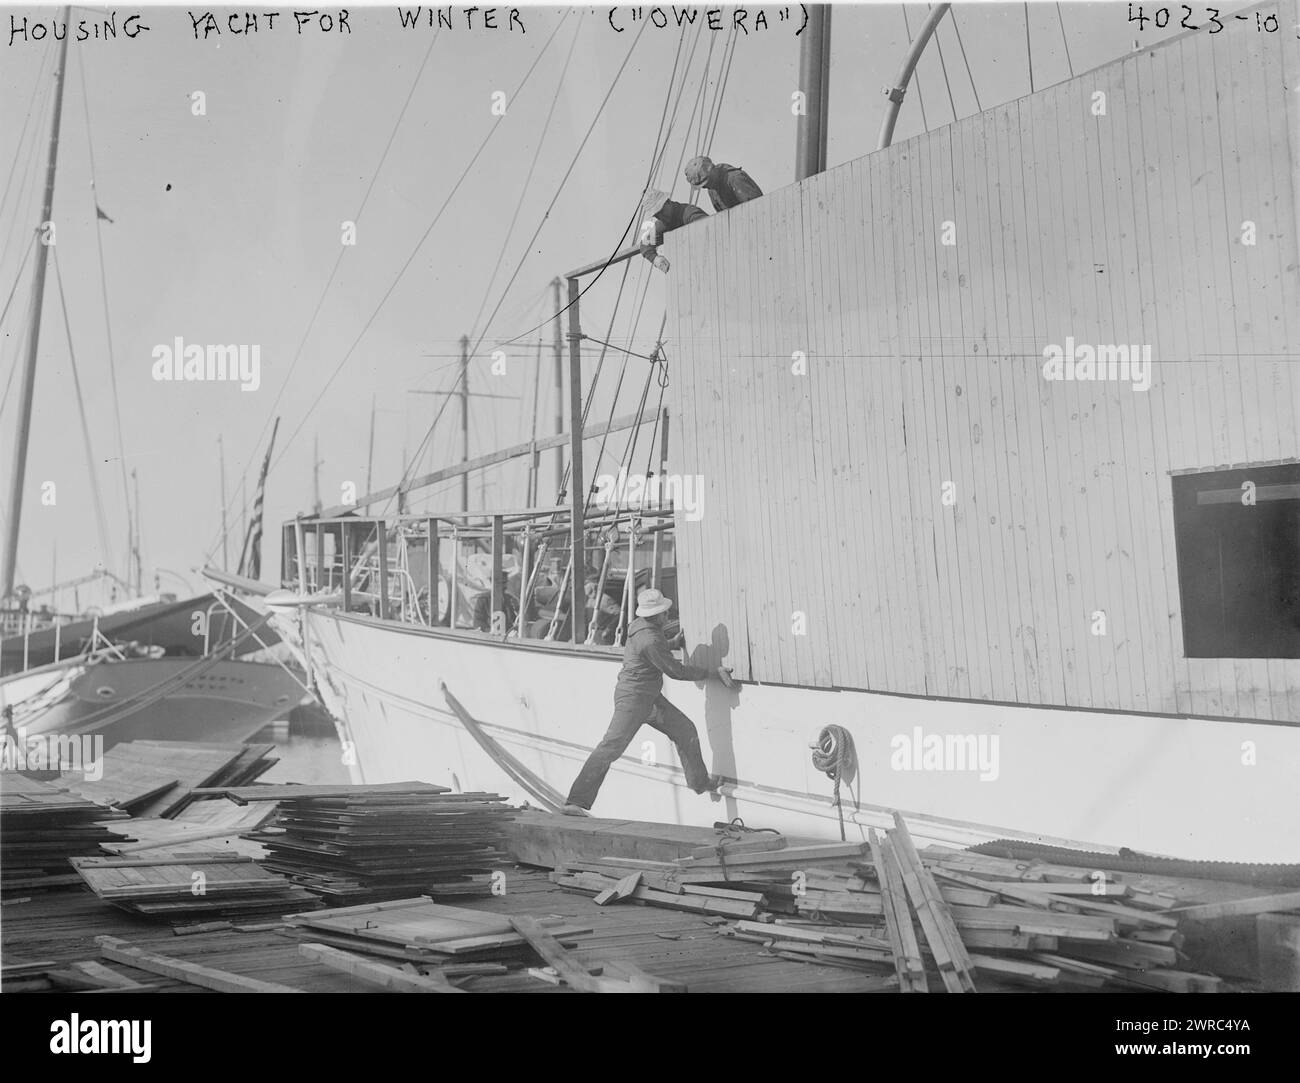 Housing yacht for Winter ("Owera"), la fotografia mostra le abitazioni in costruzione intorno alla nave di pattuglia della Marina, commissionata il 15 giugno 1917 come USS Owera (SP-167), tra il 1917 e il 79 circa. 1920, Glass negative, 1 negativo: Glass Foto Stock